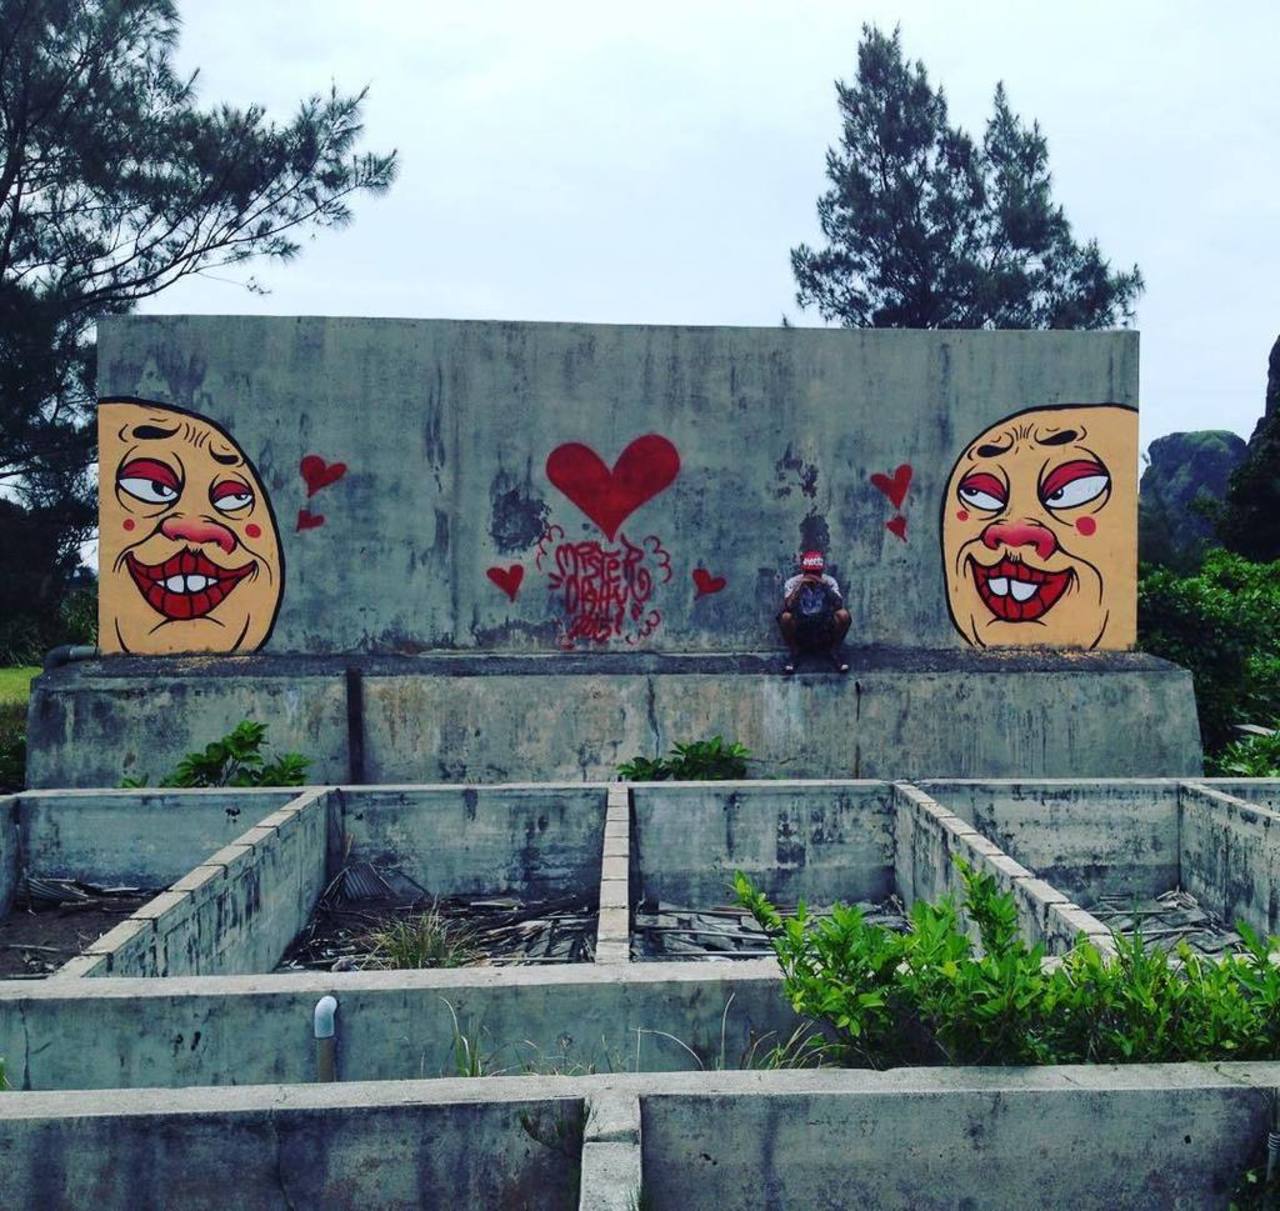 RT @artpushr: via #mrogay "http://ift.tt/1VhsmQ5" #graffiti #streetart http://t.co/rEaAq9sRUu